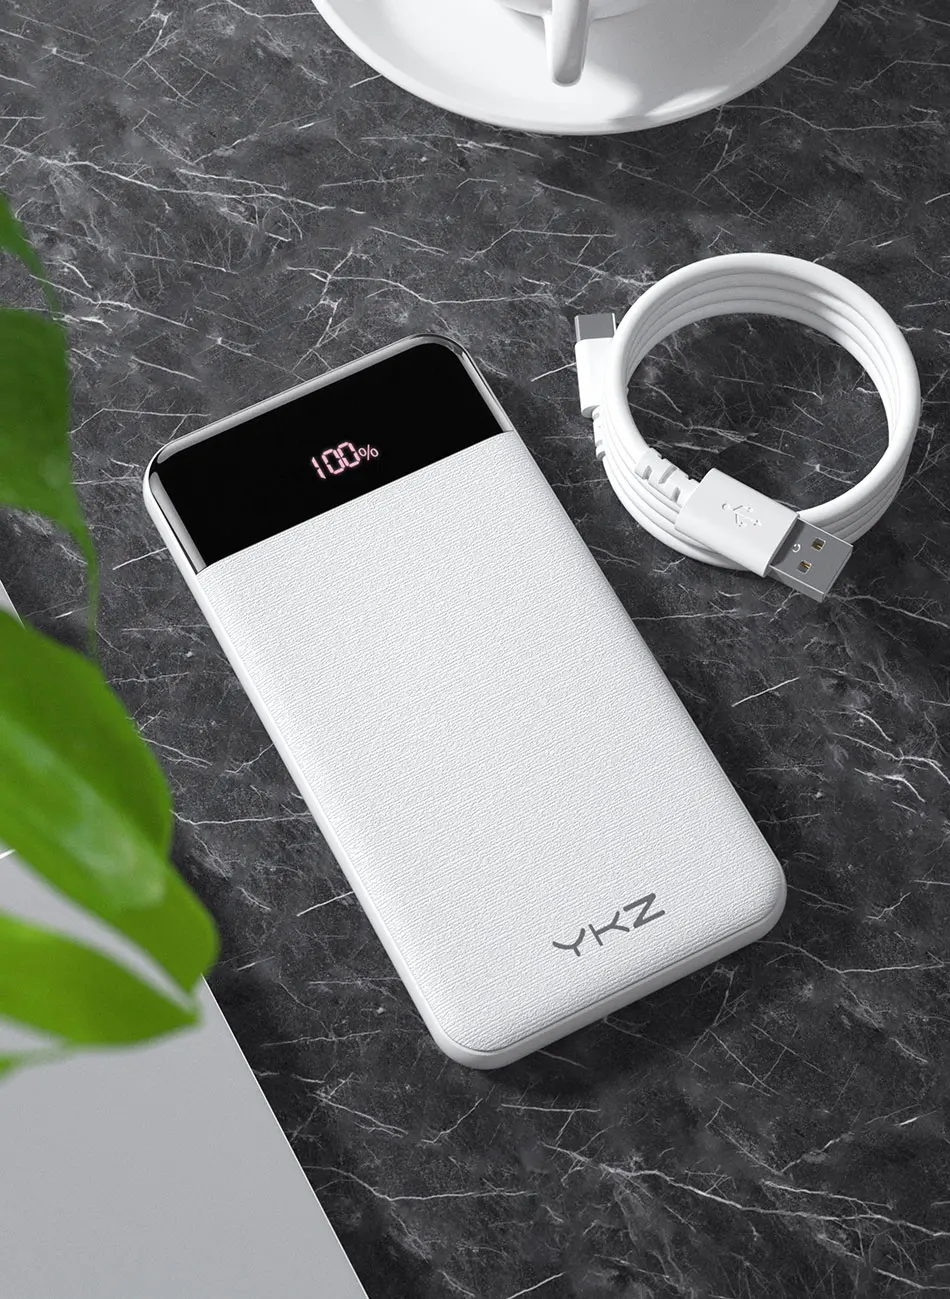 YKZ QC 3,0 светодиодный внешний аккумулятор 10000 мАч, портативный внешний аккумулятор для мобильного телефона, PD быстрое зарядное устройство, повербанк для Xiaomi Mi, Pover Bank